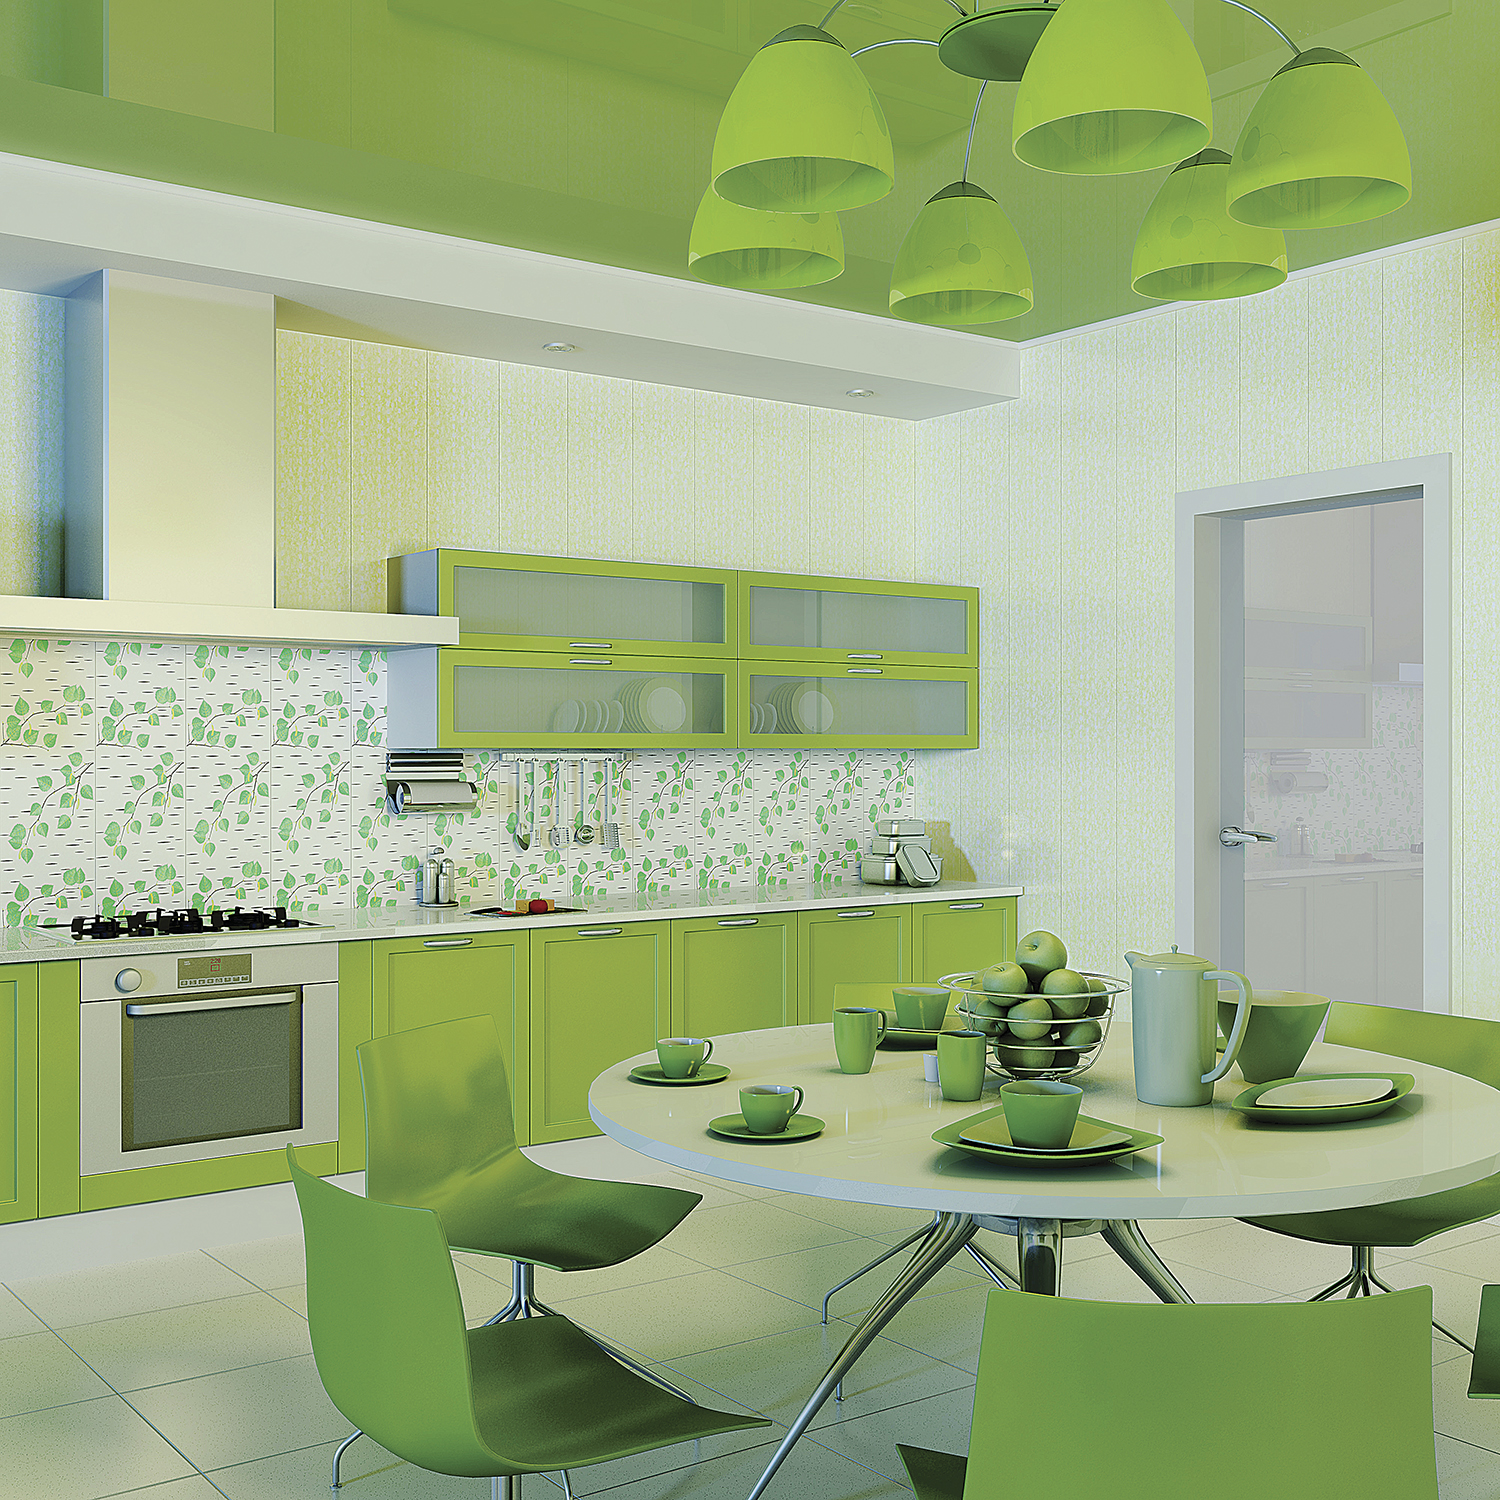 Ремонт кухни панелями. Кухни салатовые. Кухня в зеленых тонах. Кухня в салатовых тонах. Кухня зеленого цвета в интерьере.